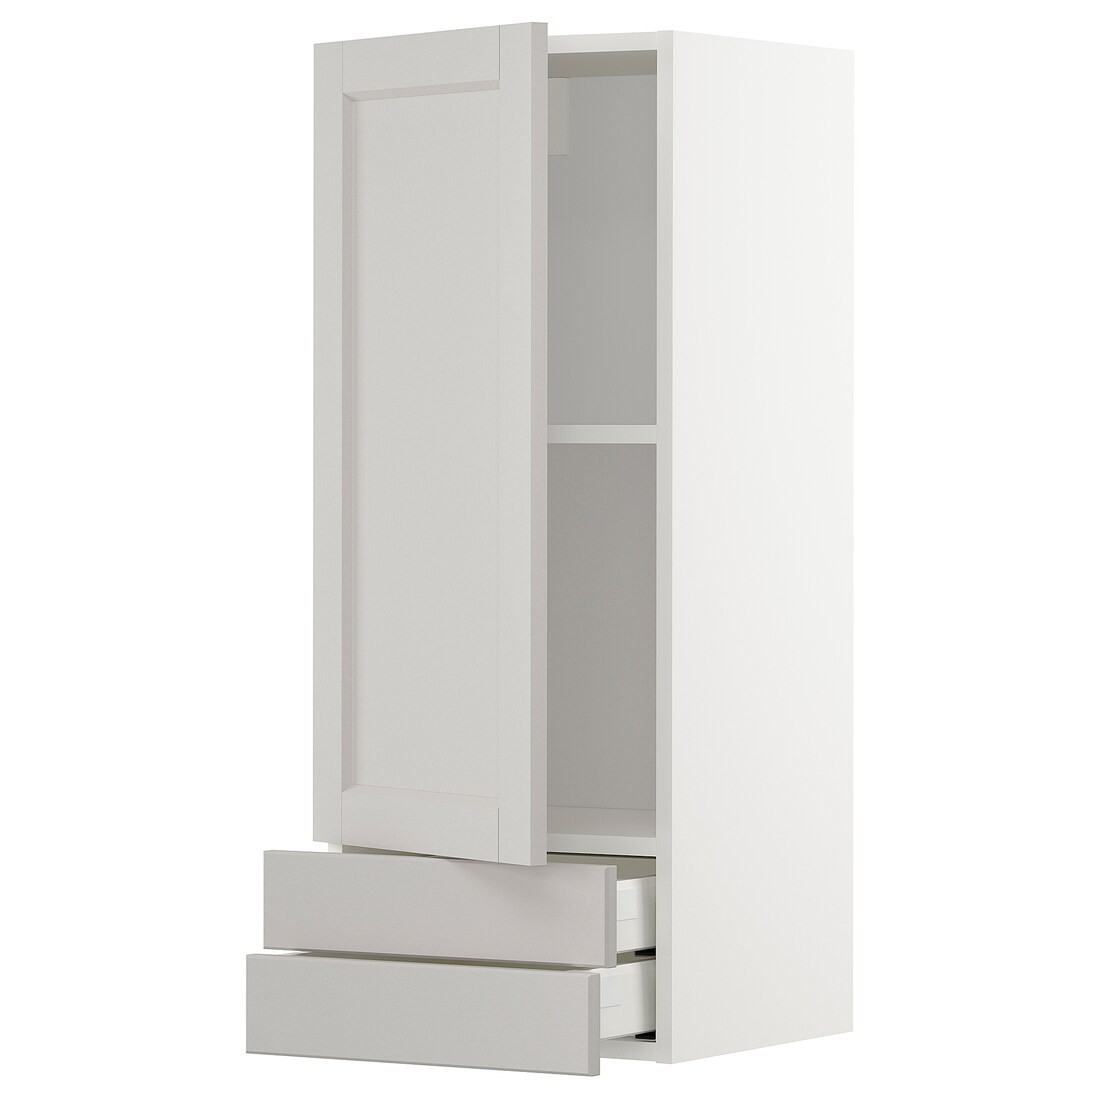 IKEA METOD МЕТОД / MAXIMERA МАКСИМЕРА Настенный шкаф, дверь / 2 ящика, белый / Lerhyttan светло-серый, 40x100 см 69469721 | 694.697.21